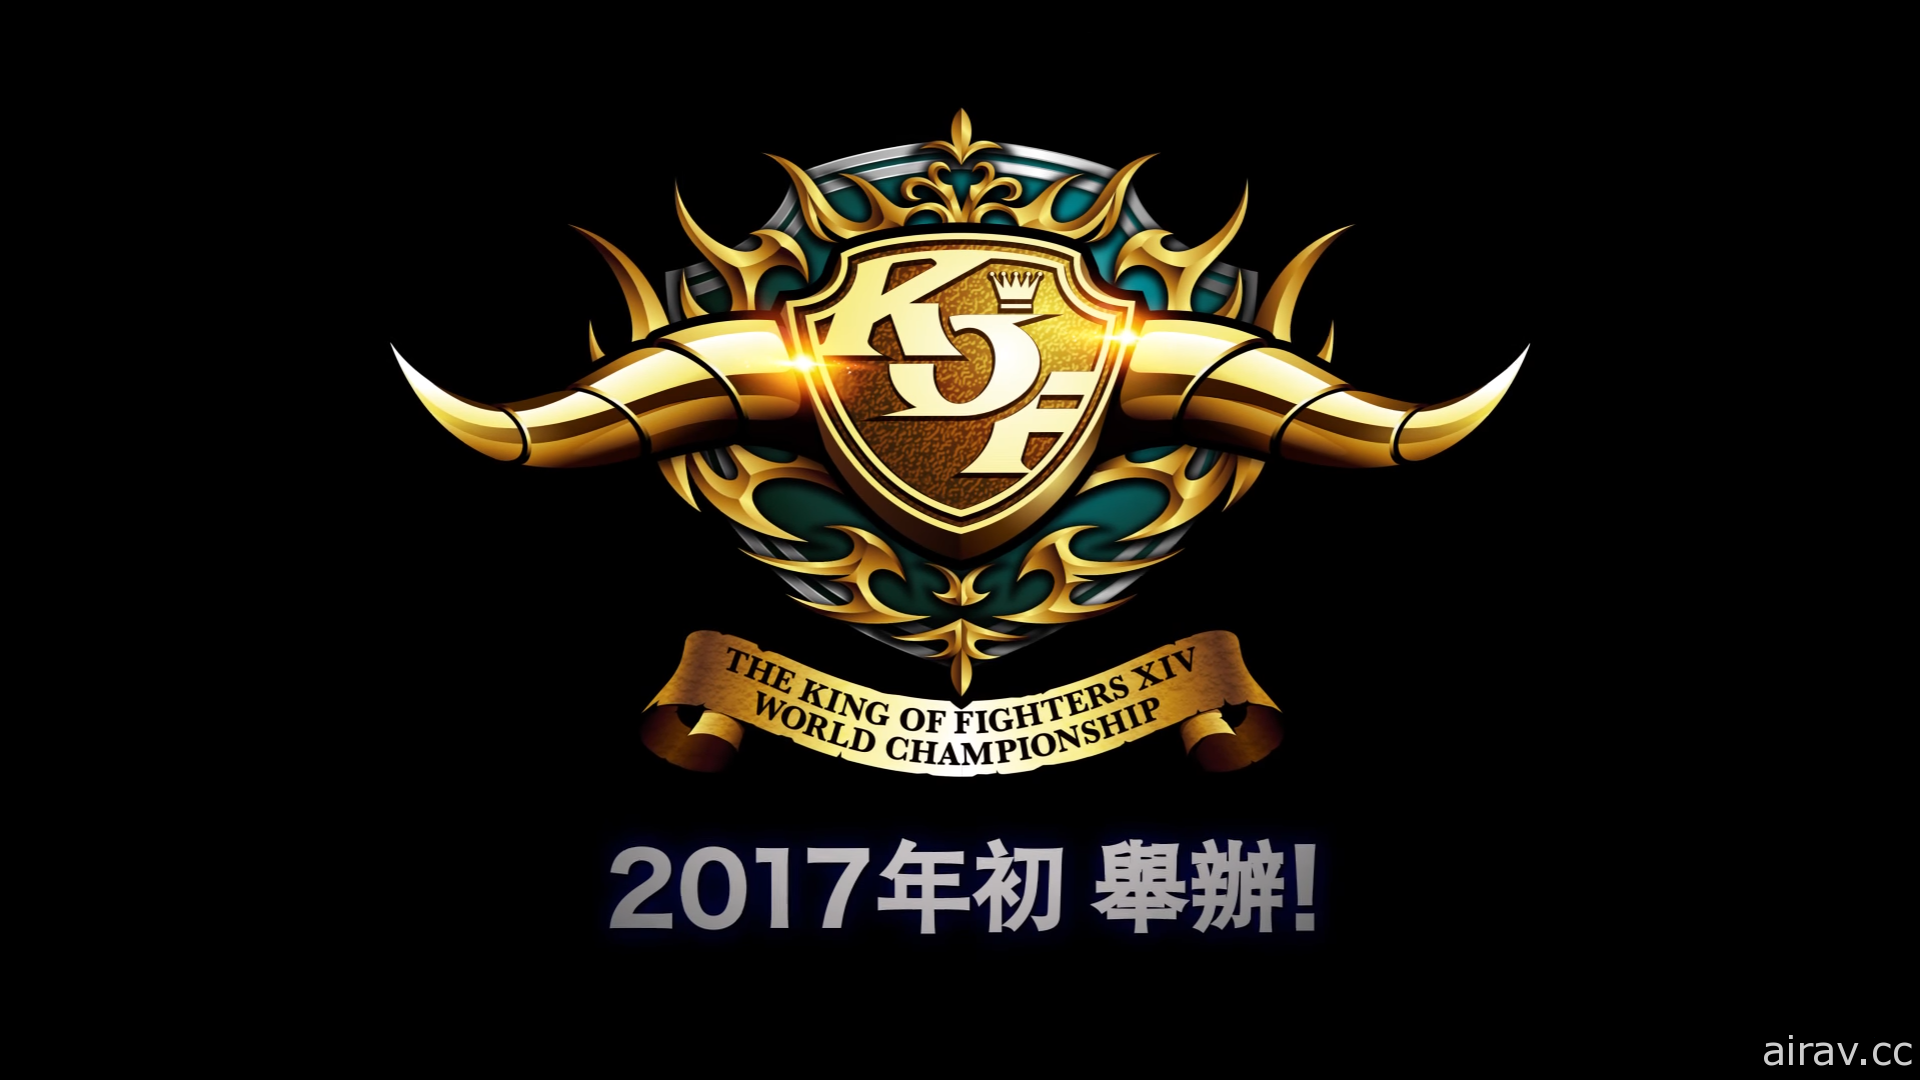 《拳皇 XIV》「KOF XIV WORLD CHAMPIONSHIP」台灣區預選賽報名開始 1 月